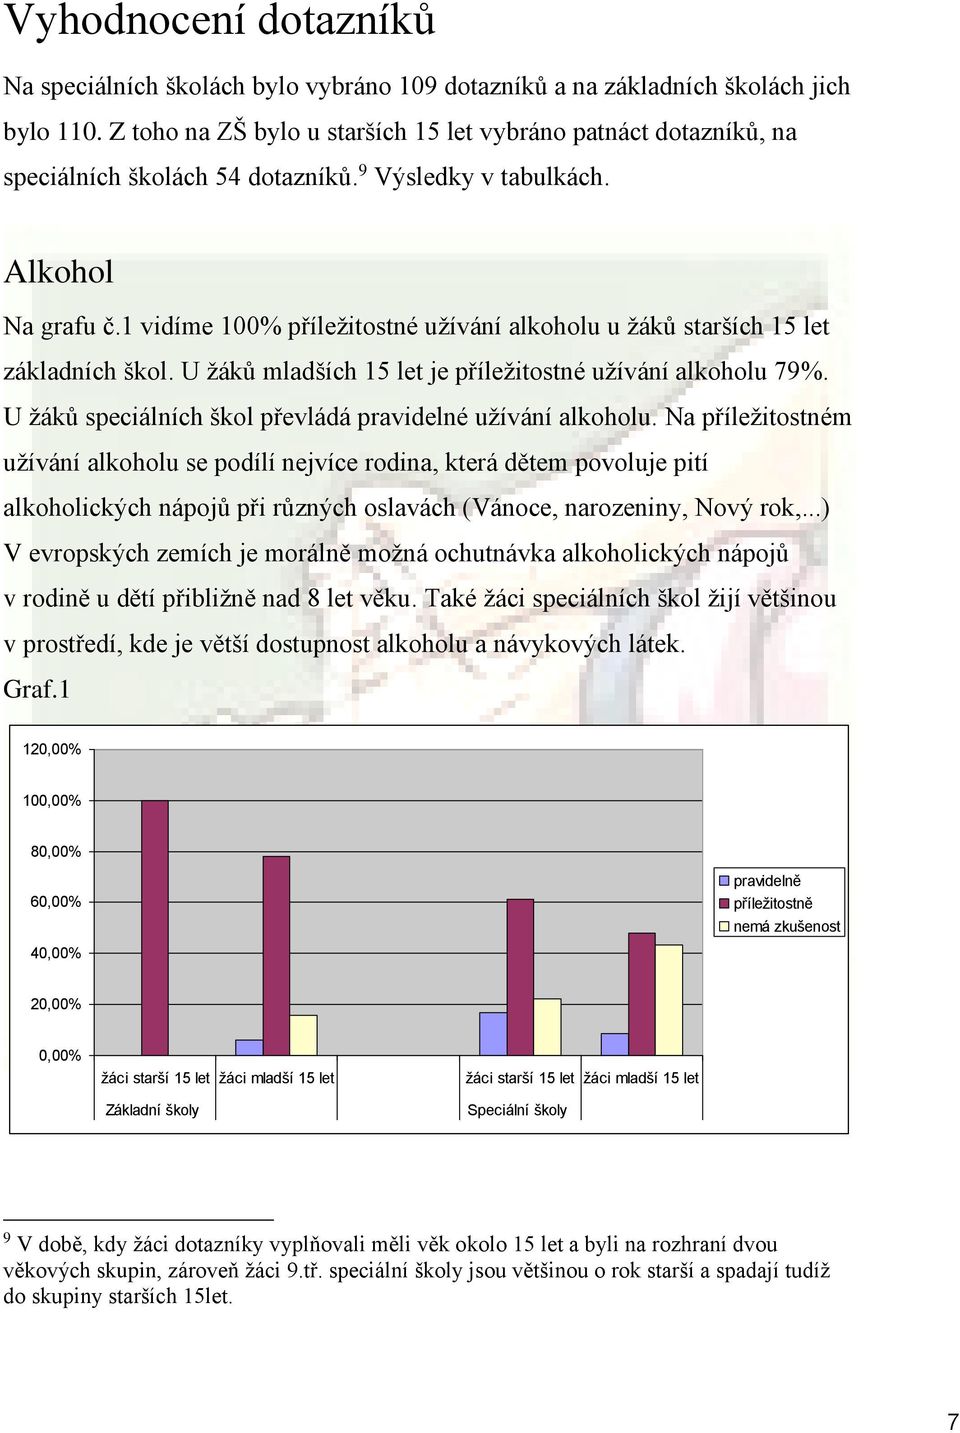 1 vidíme 100% příležitostné užívání alkoholu u žáků starších 15 let základních škol. U žáků mladších 15 let je příležitostné užívání alkoholu 79%.